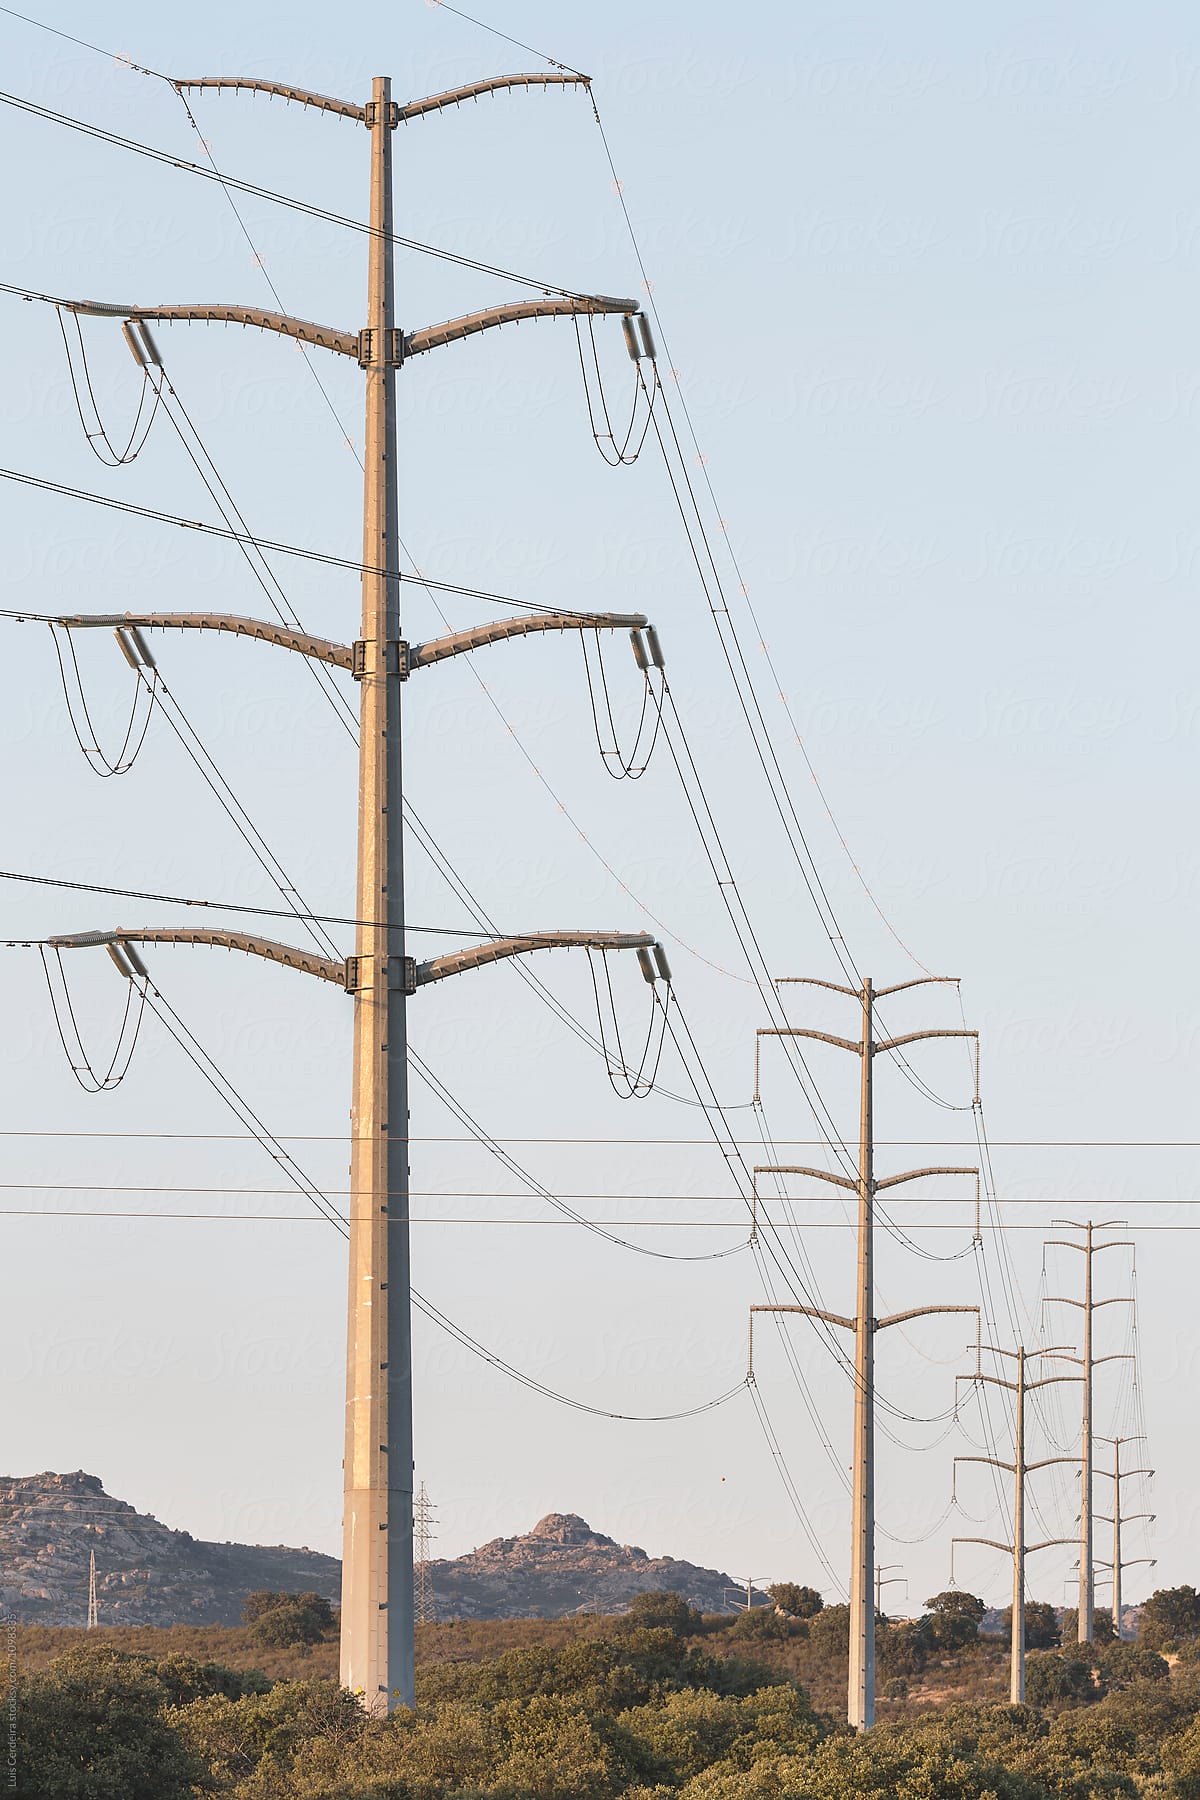 Electricity transmission line at dusk